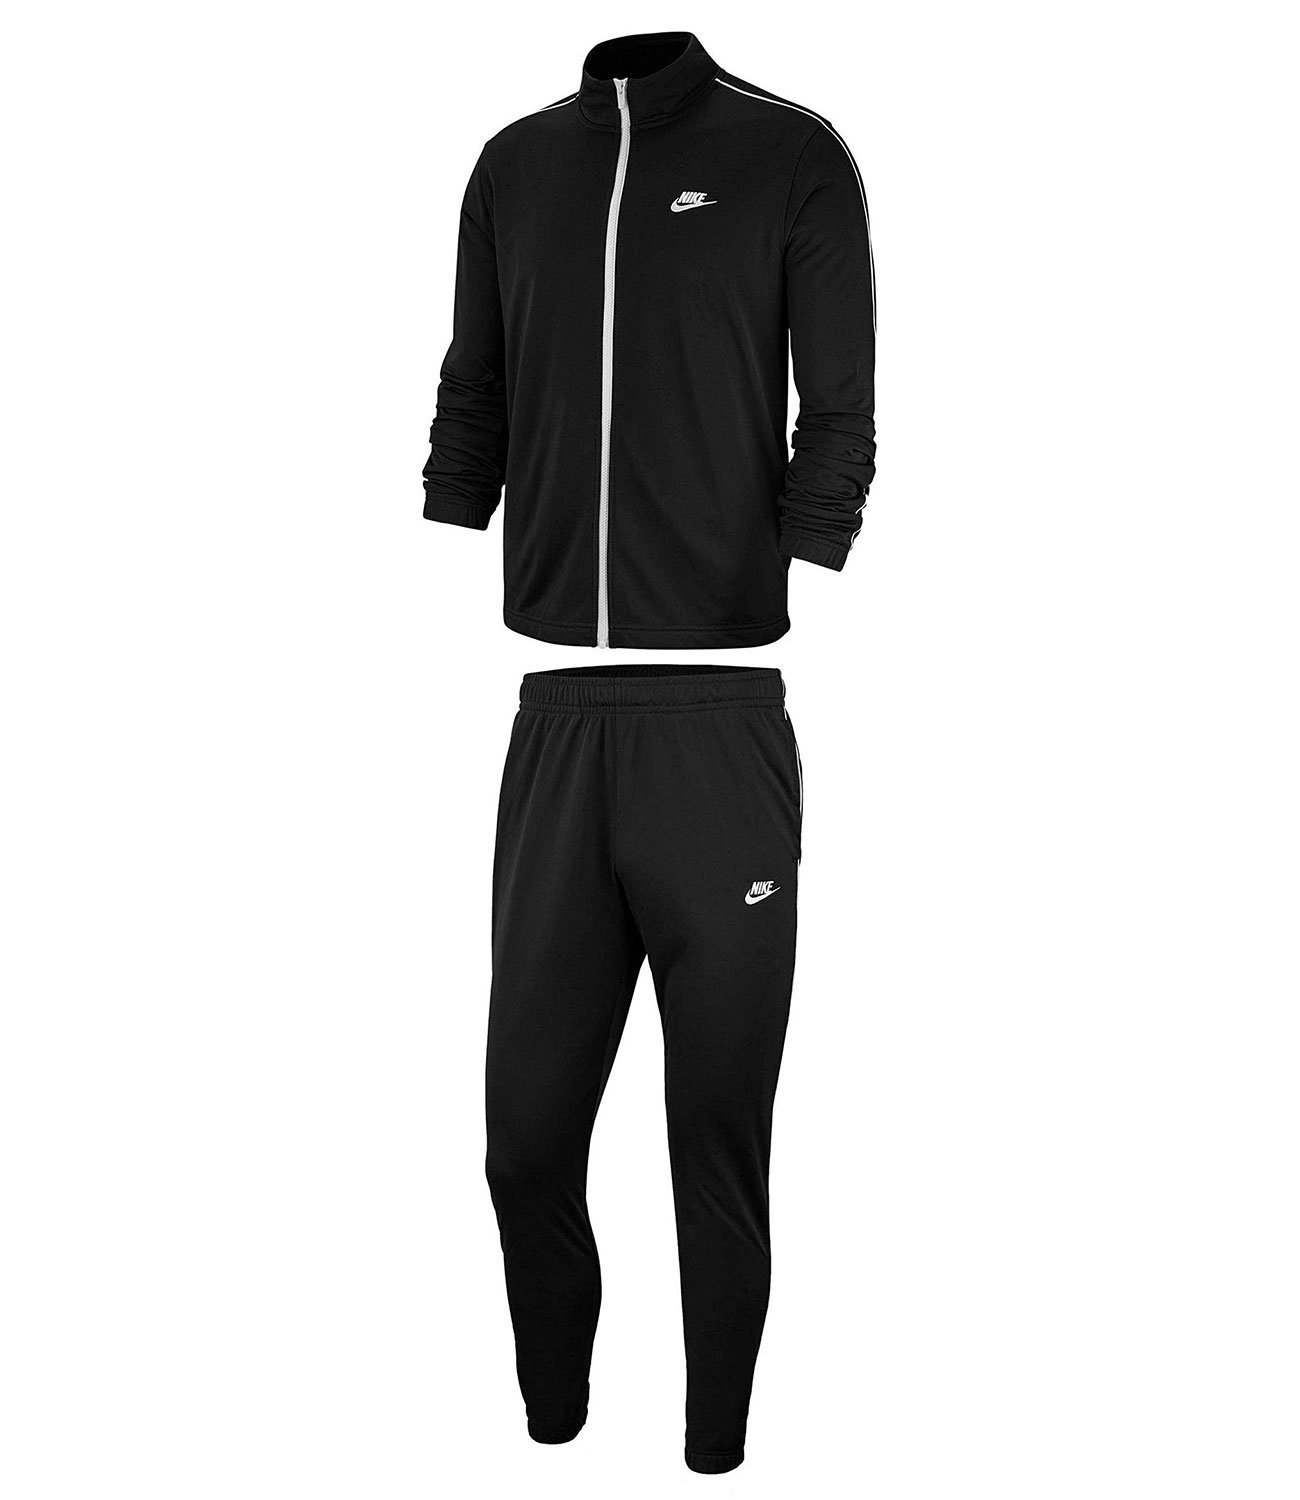 Черный спортивный костюм Nike bv3034-010. Nike bv3034-010. Черный спортивный костюм Nike Woven 886511-010. Nike Tracksuit костюм мужской.